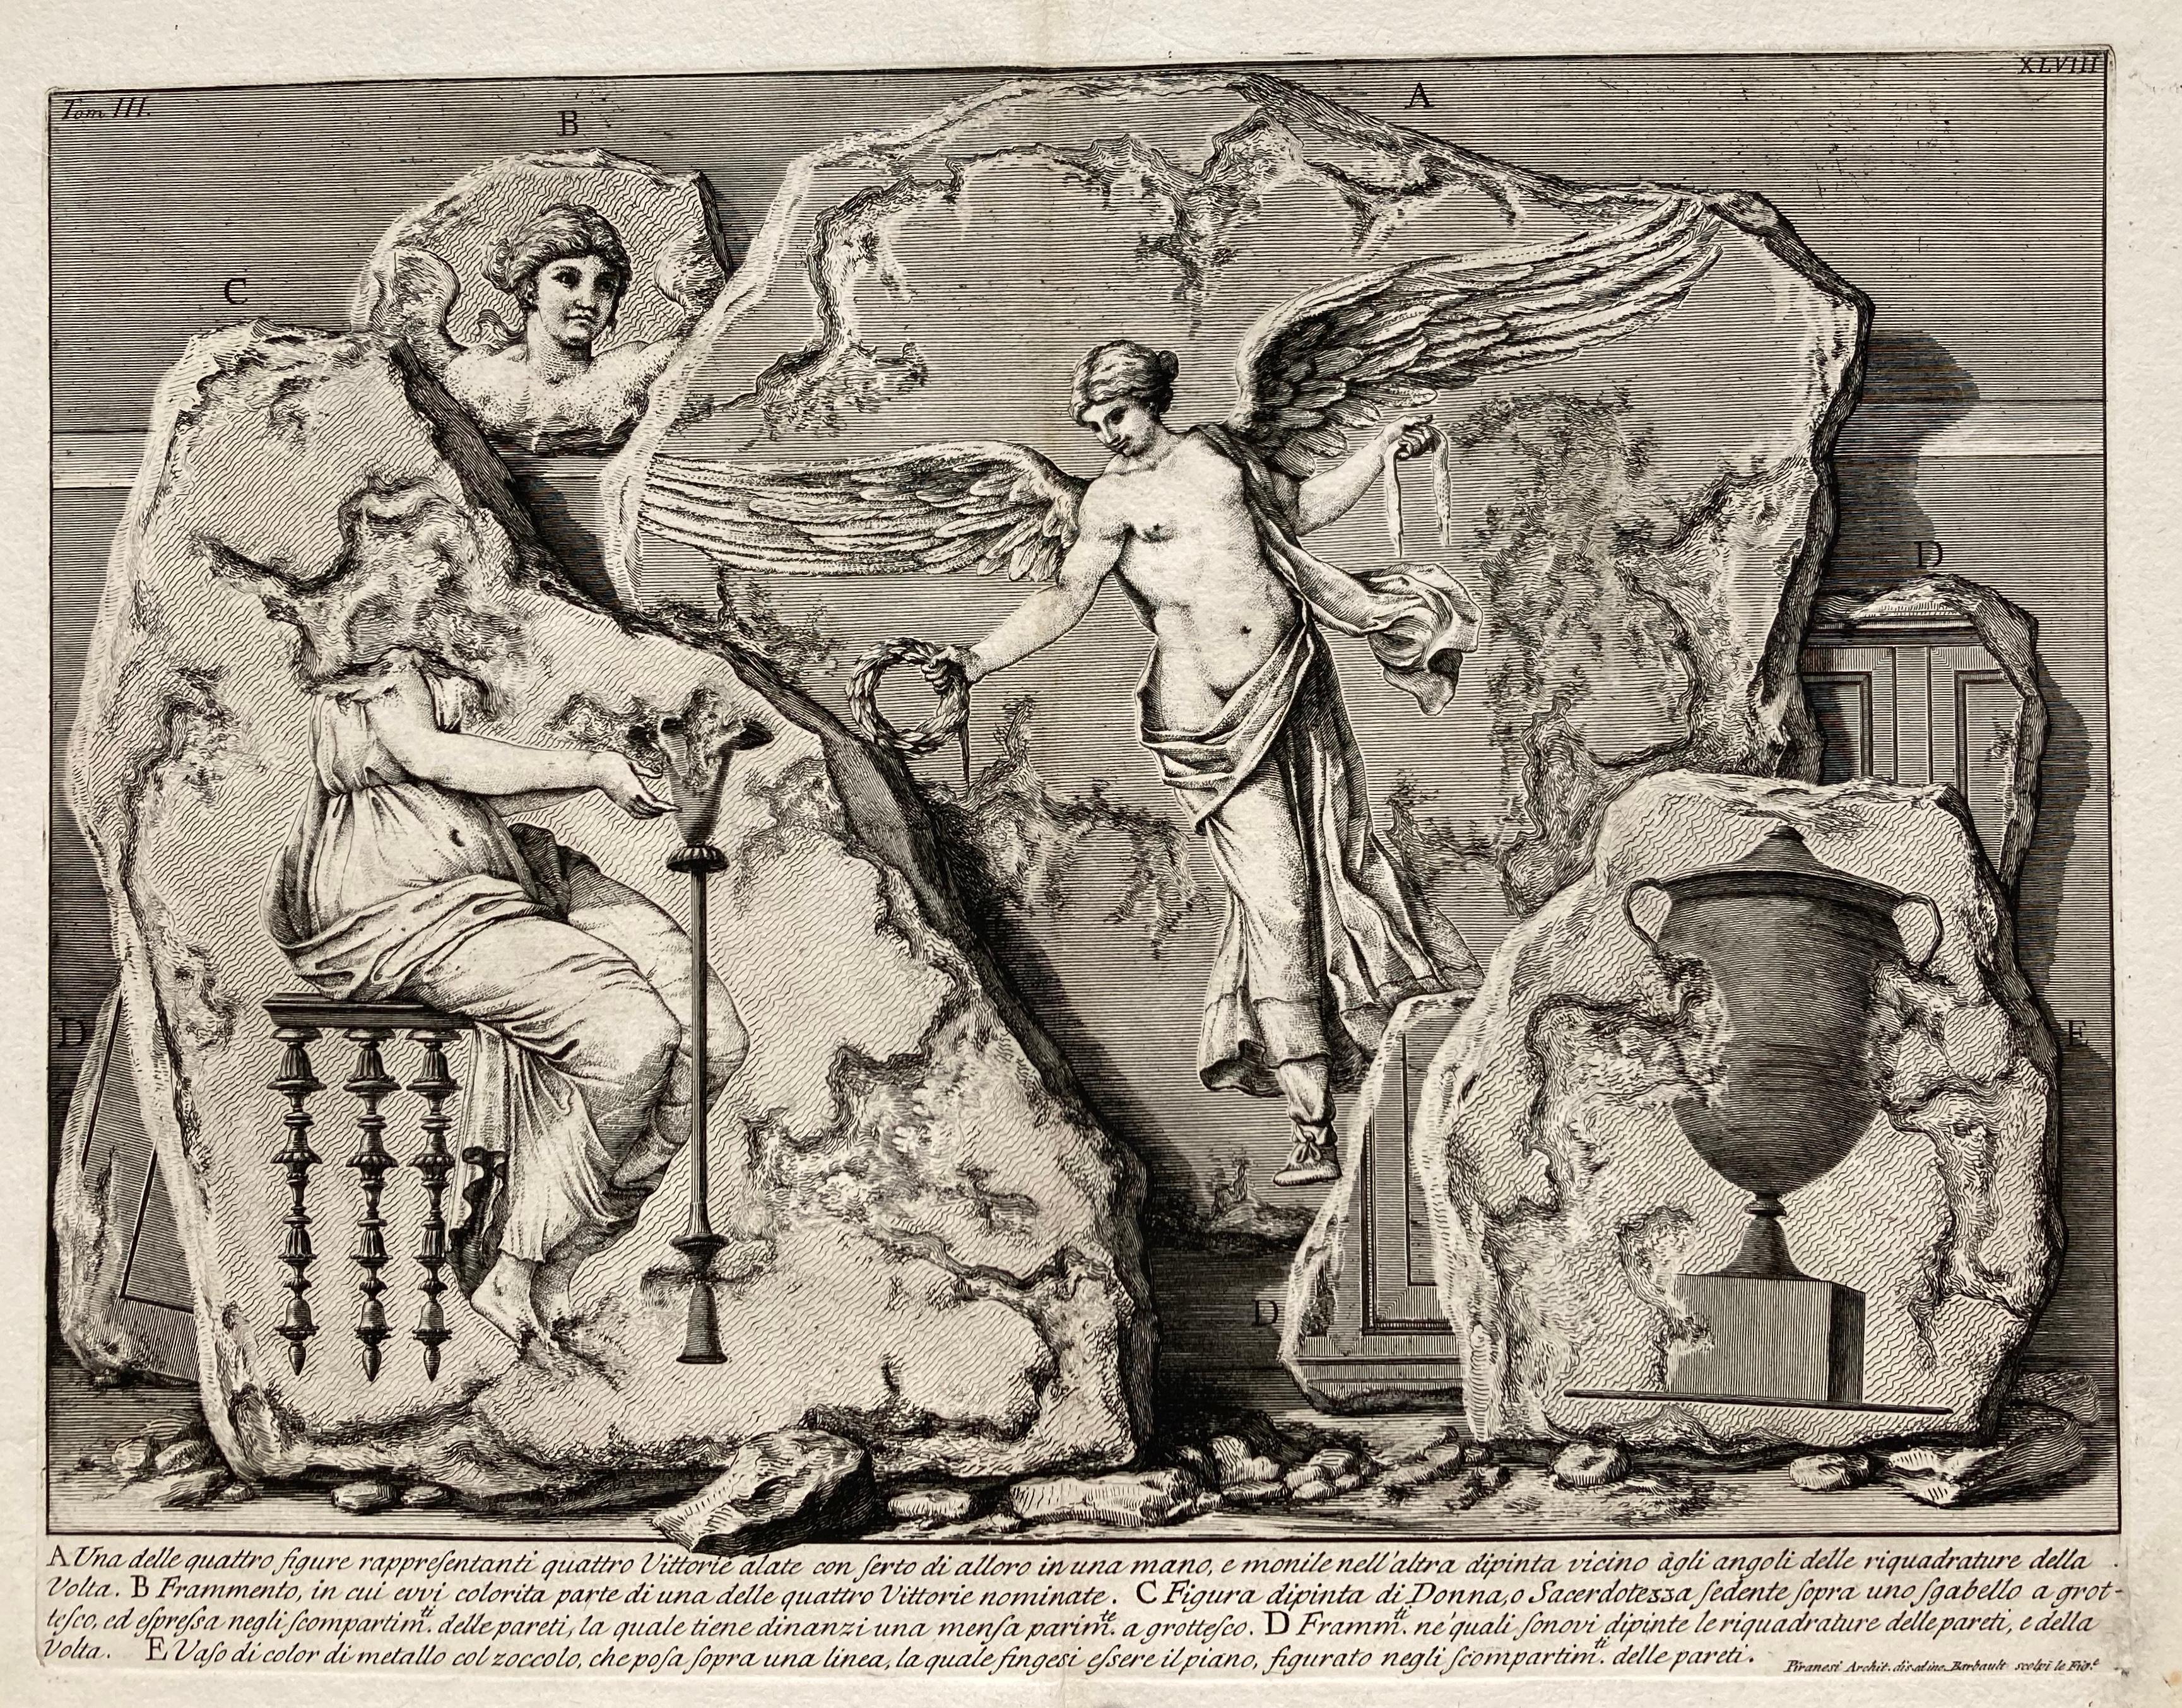 GIOVANNI BATTISTA PIRANESI (1710-1778)

UNA DELLE QUATTRO FIGURE RAPPRESENTANTI QUATTTRO VITTORIE, (Focillon 330, Wilton-Ely 463) 1750-1756
Gravure à l'eau-forte, planche 48 de 